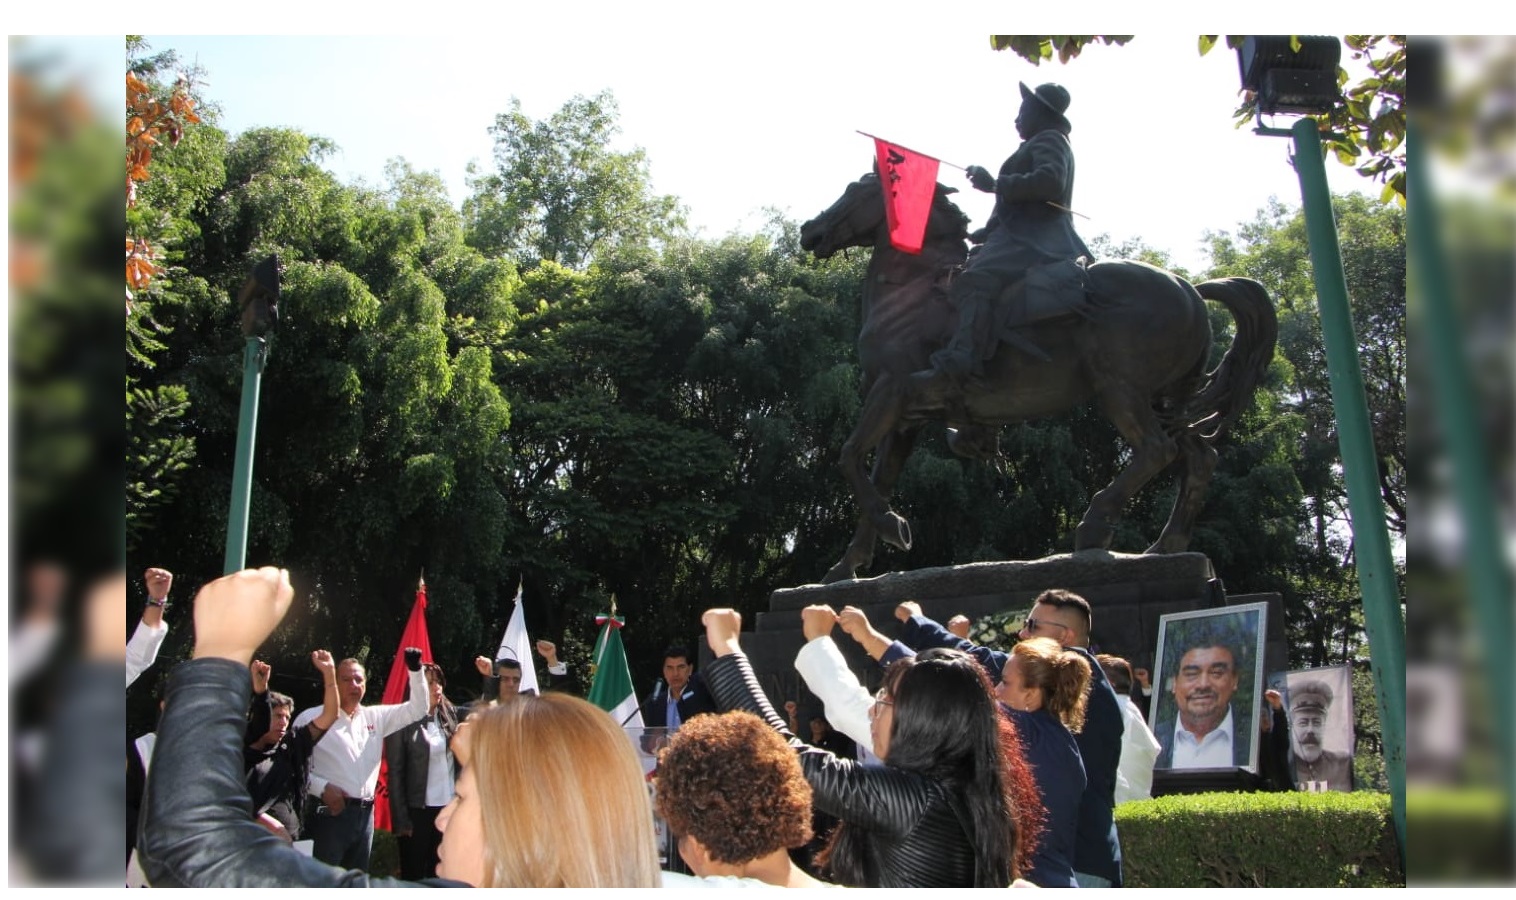 Integrantes del Frente Popular Francisco Villa (FPFV) colocaron una ofrenda floral en el monumento a El Centauro del Norte, ubicado en el Parque de los Venados, con motivo del centenario luctuoso del prócer de la Revolución Mexicana.